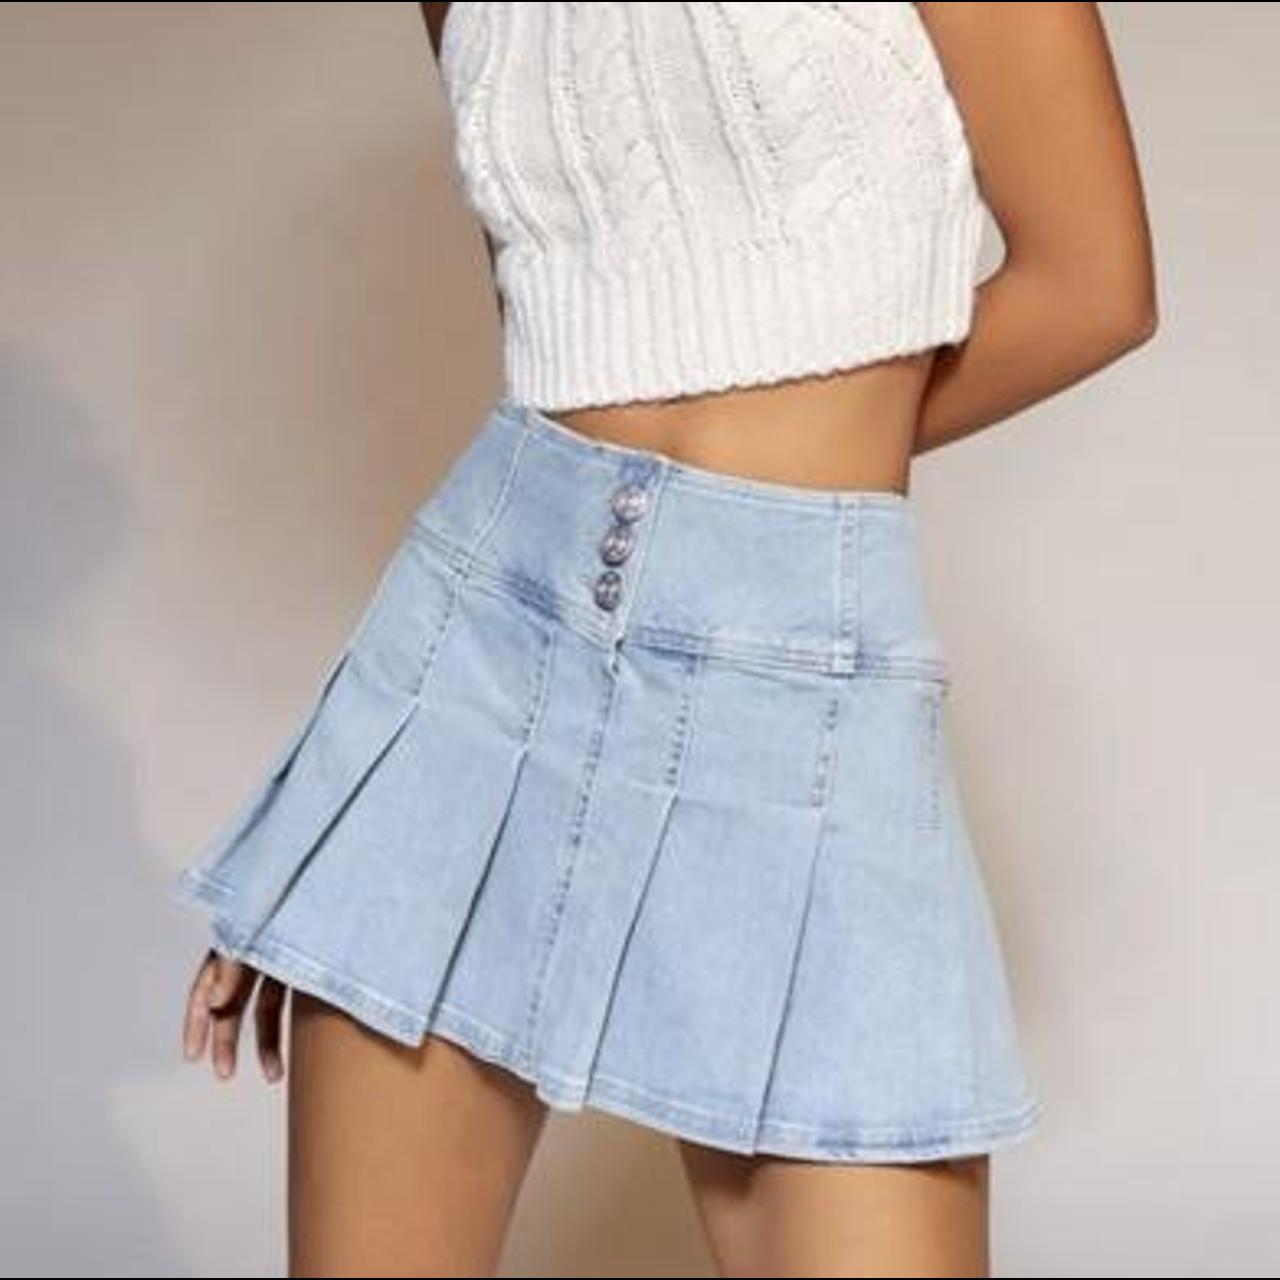 Urban Outfitters Women's Skirt | Depop